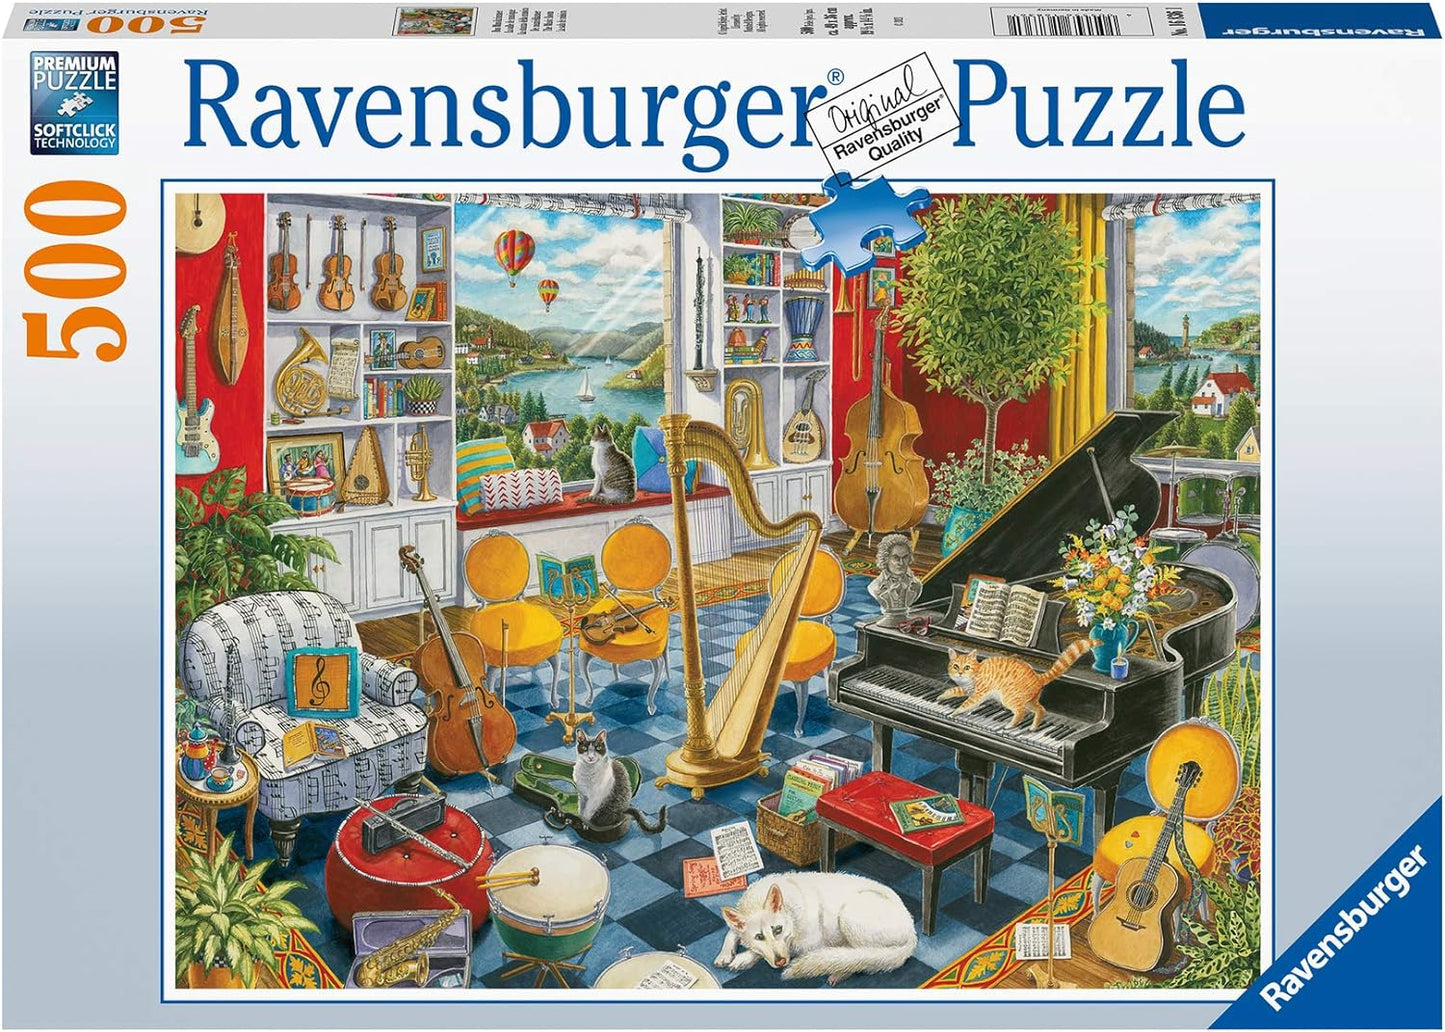 Ravensburger 500pc Puzzle